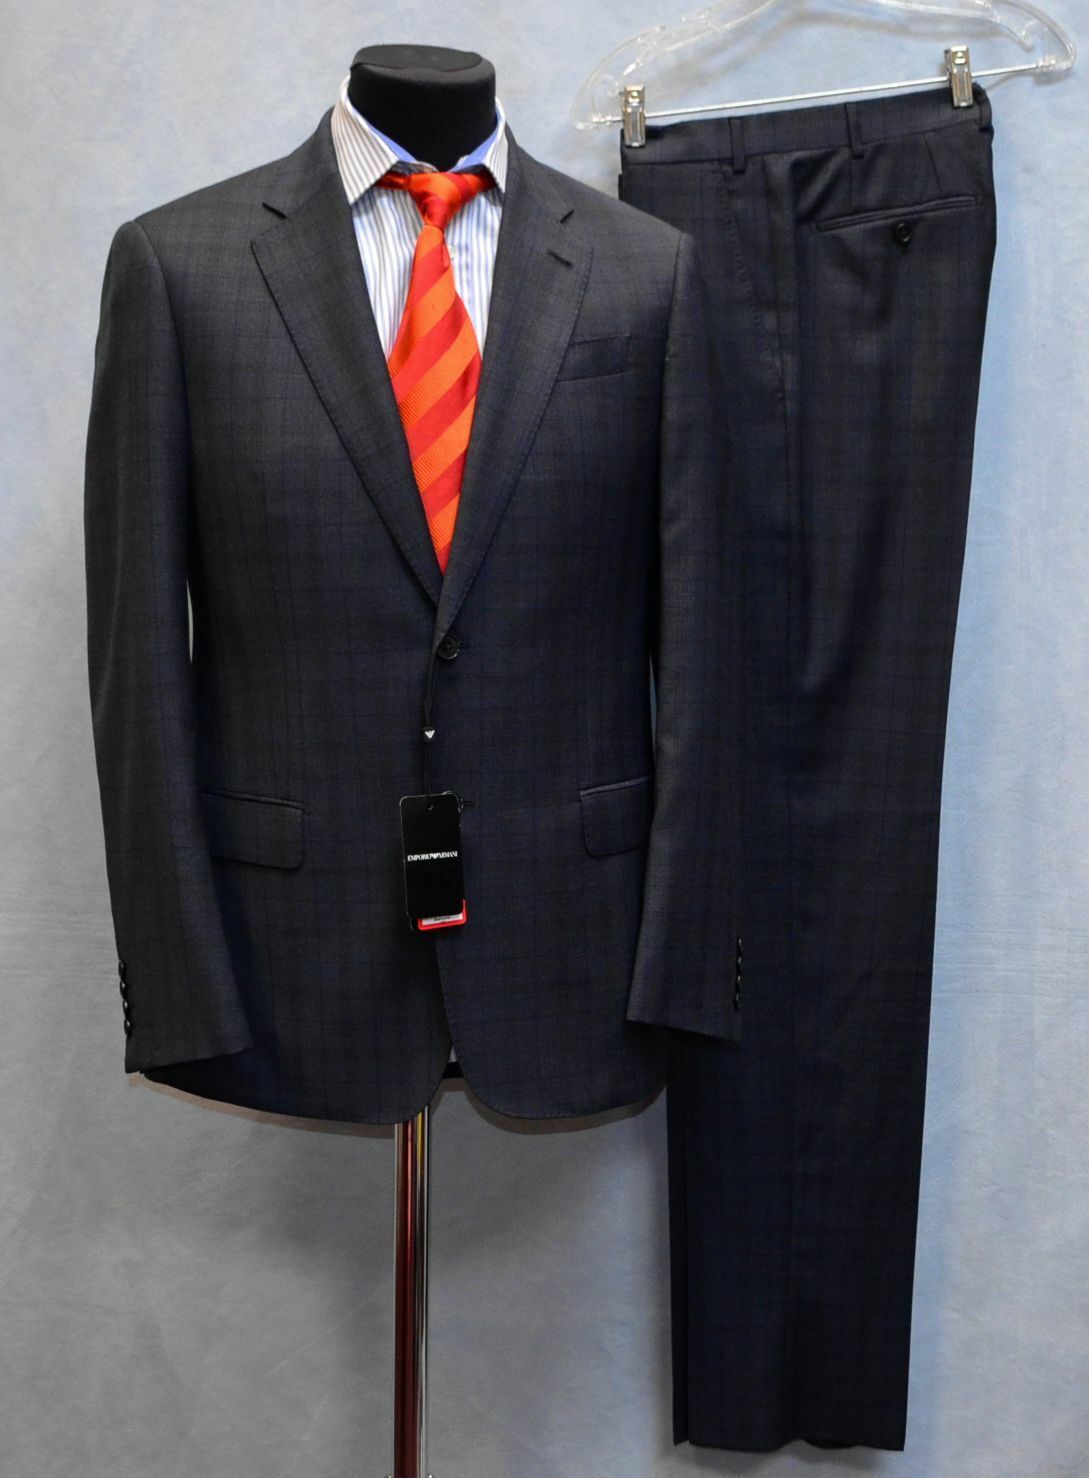 armani g line suit